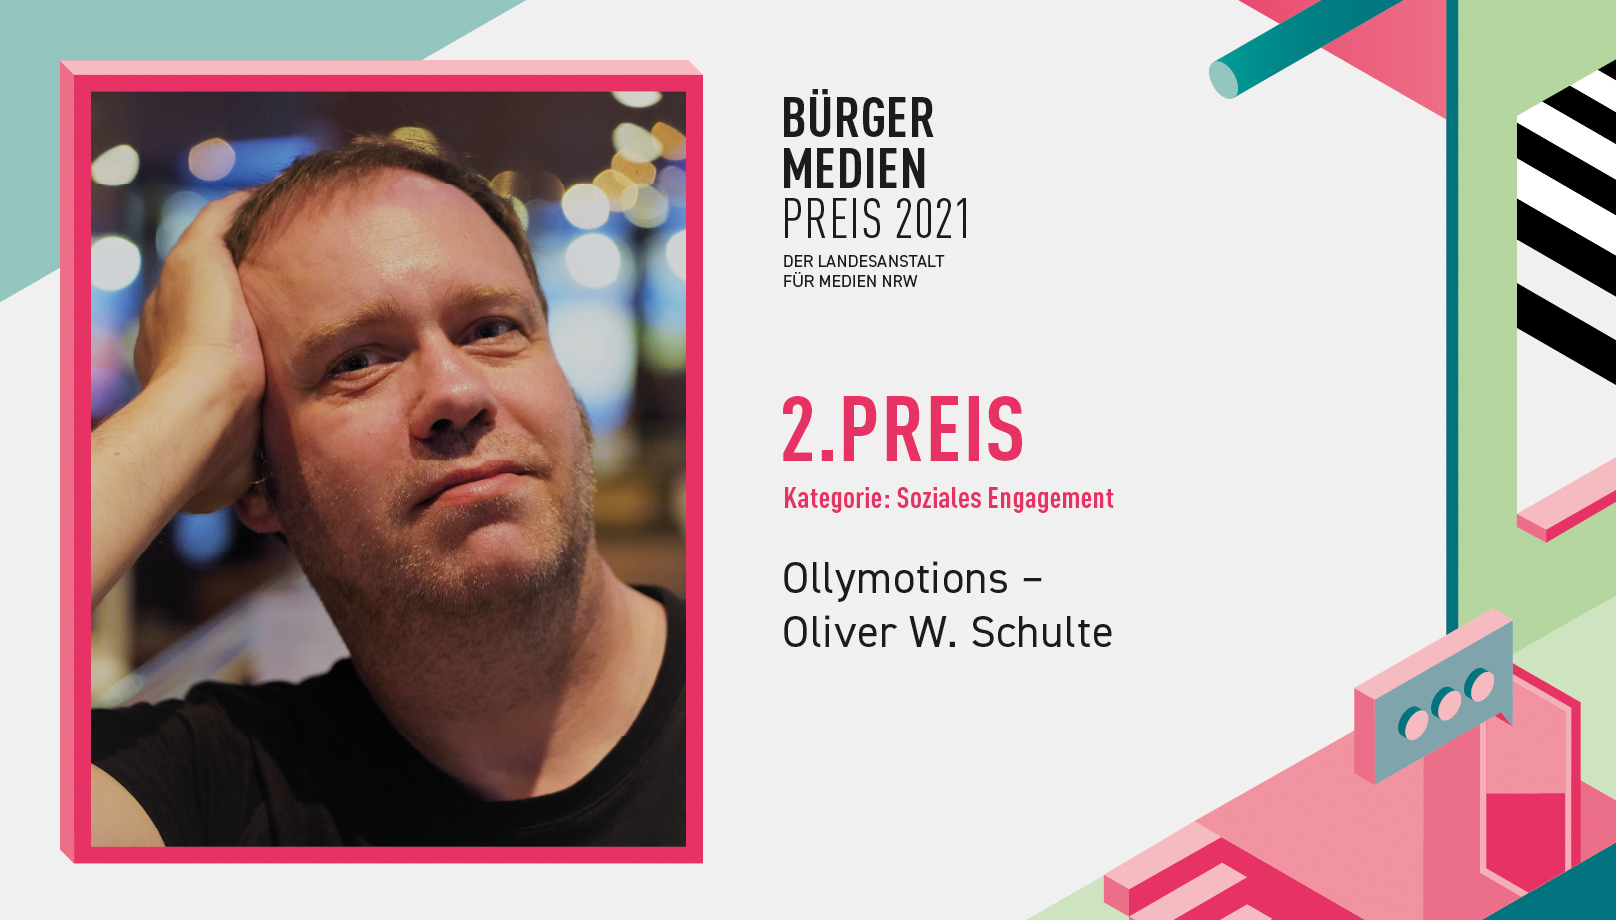 Die Videoproduktion "Bielefeld zeigt Flagge" von Oliver W. Schulte wurde von der Landesanstalt für Medien mit dem Bürgermedienpreis ausgezeichnet